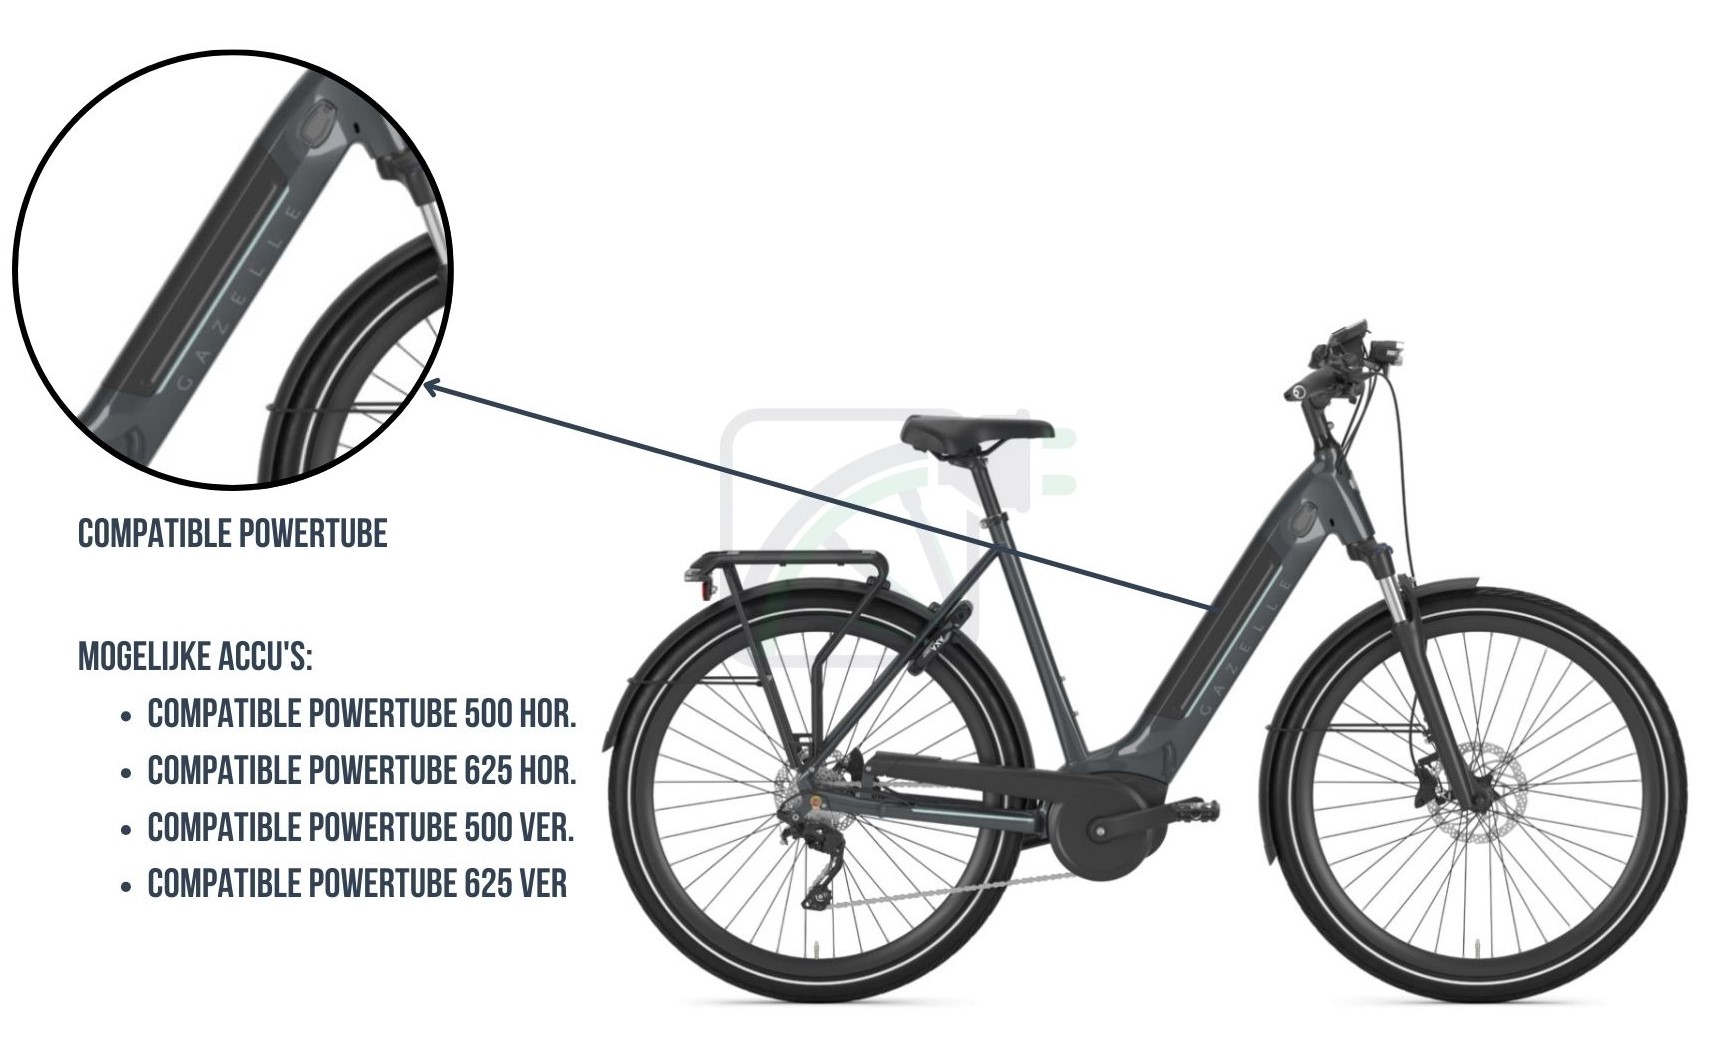 Se amplía una parte de la imagen y se resalta la batería de la bicicleta. También se nombran las posibles baterías para esta bicicleta eléctrica. Se trata de Powertubes Bosch compatibles.